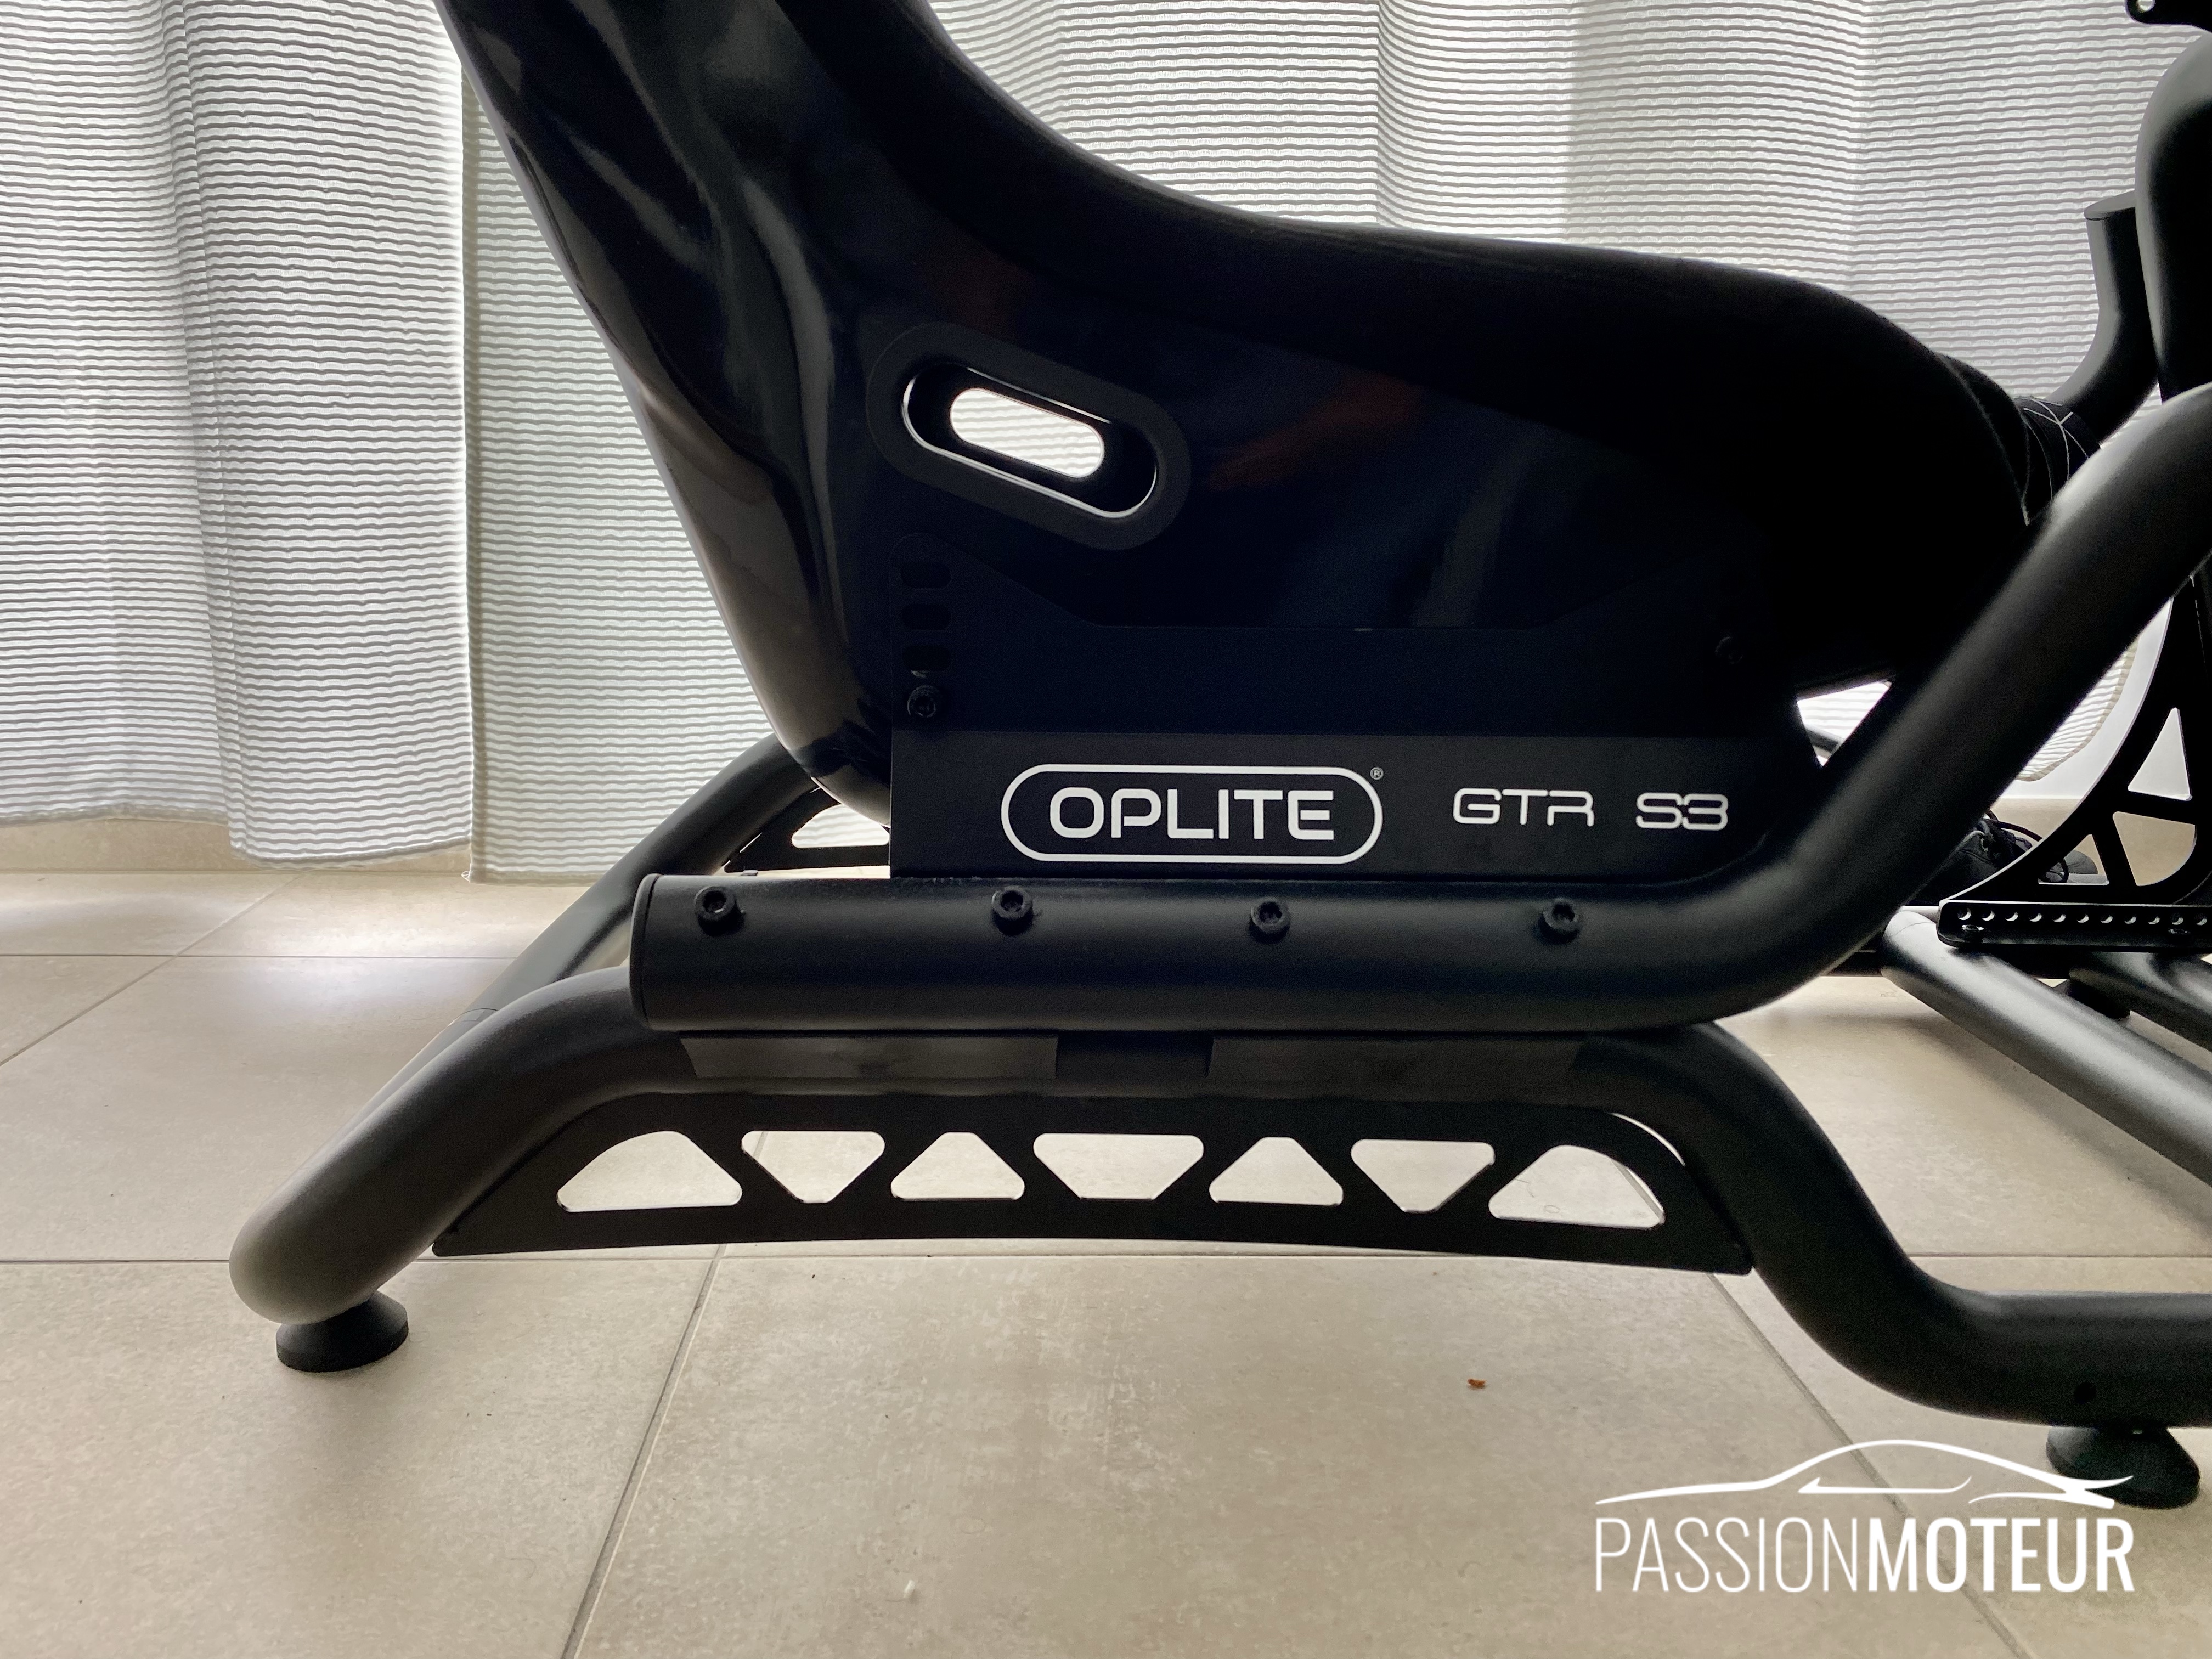 OPLITE GTR S3 Ultimate Chassis – OPLITE Games